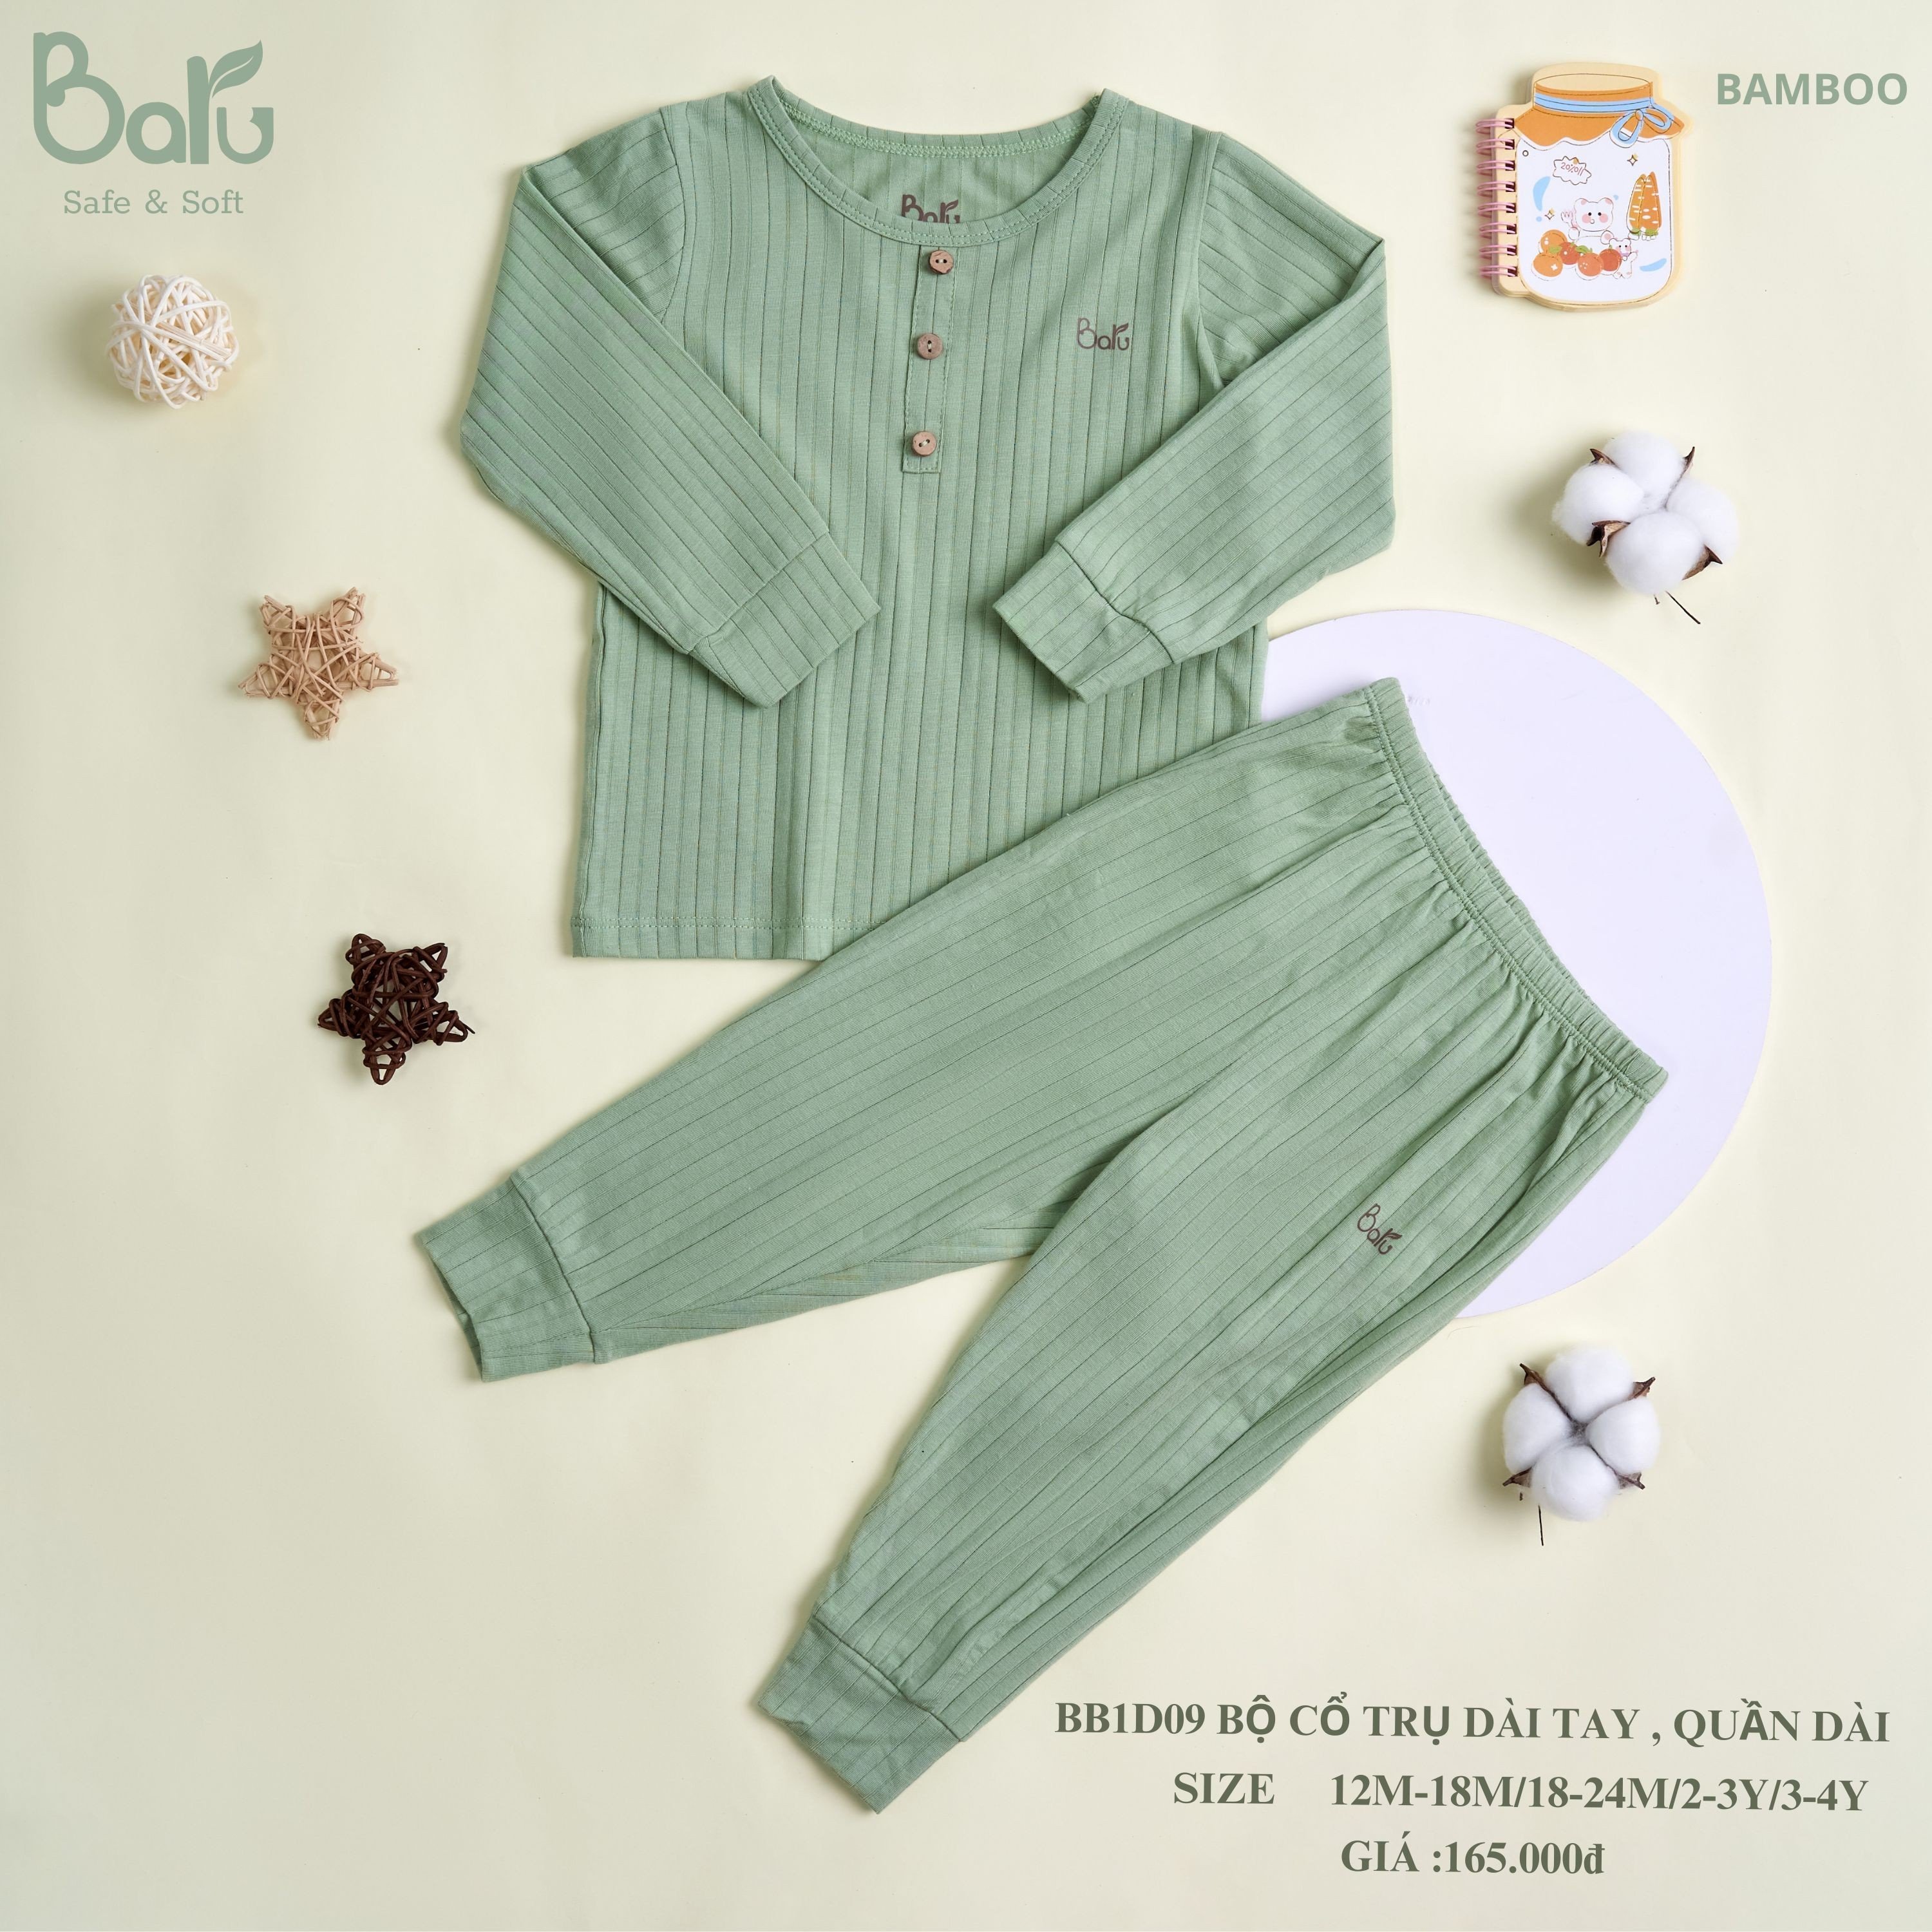 Bộ sơ sinh  BARU cotton dài tay,cài lệch kèm phụ kiện thời trang trẻ em ( 0-3m )